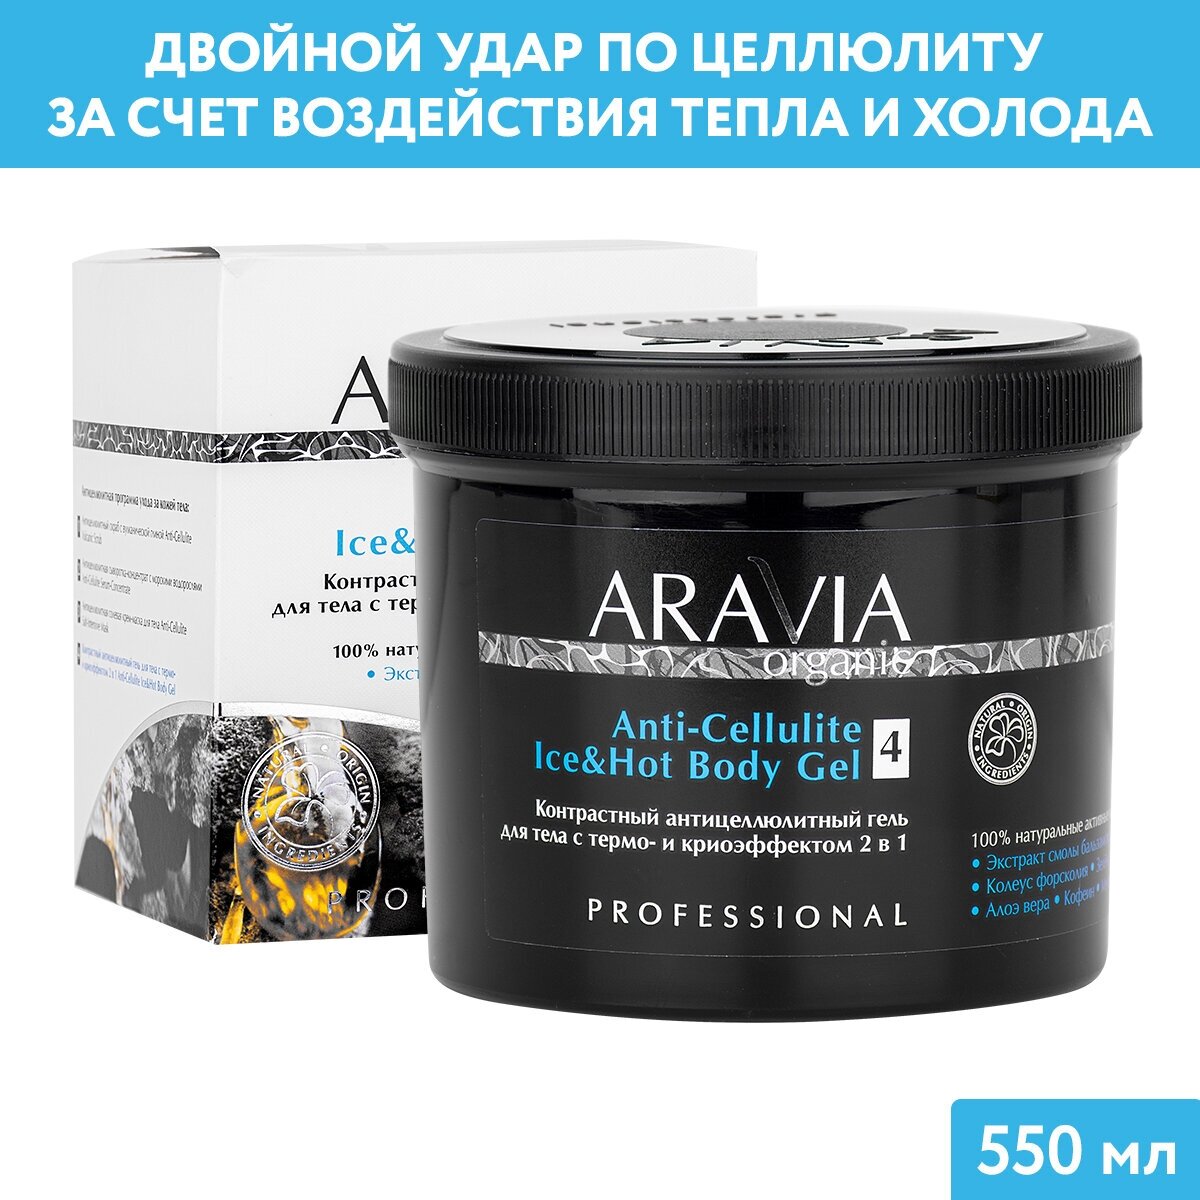 ARAVIA Контрастный антицеллюлитный гель для тела с термо и криоэффектом 2 в 1 Anti-Cellulite Ice&Hot Body Gel, 550 мл